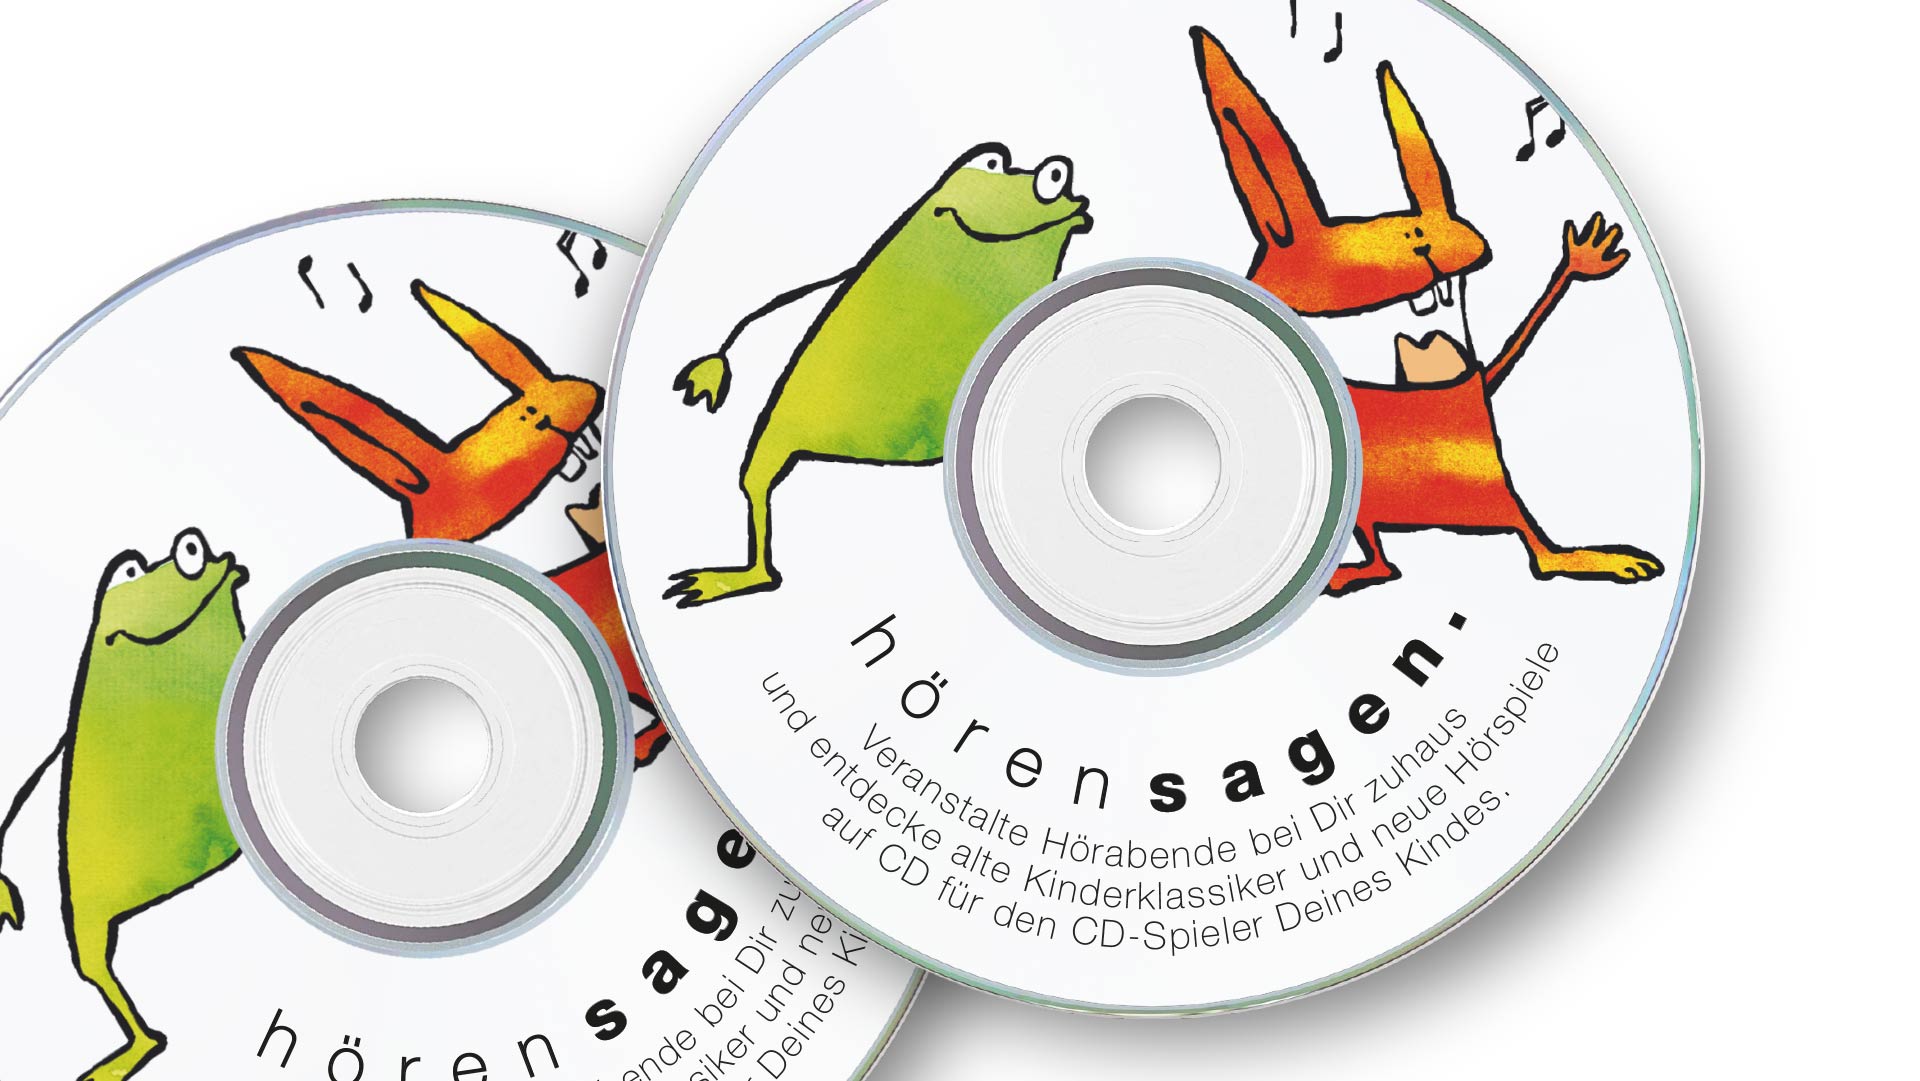 Motiv Frosch und Hase auf einer CD, darunter erklärender Text zu dem Projekt hörensagen